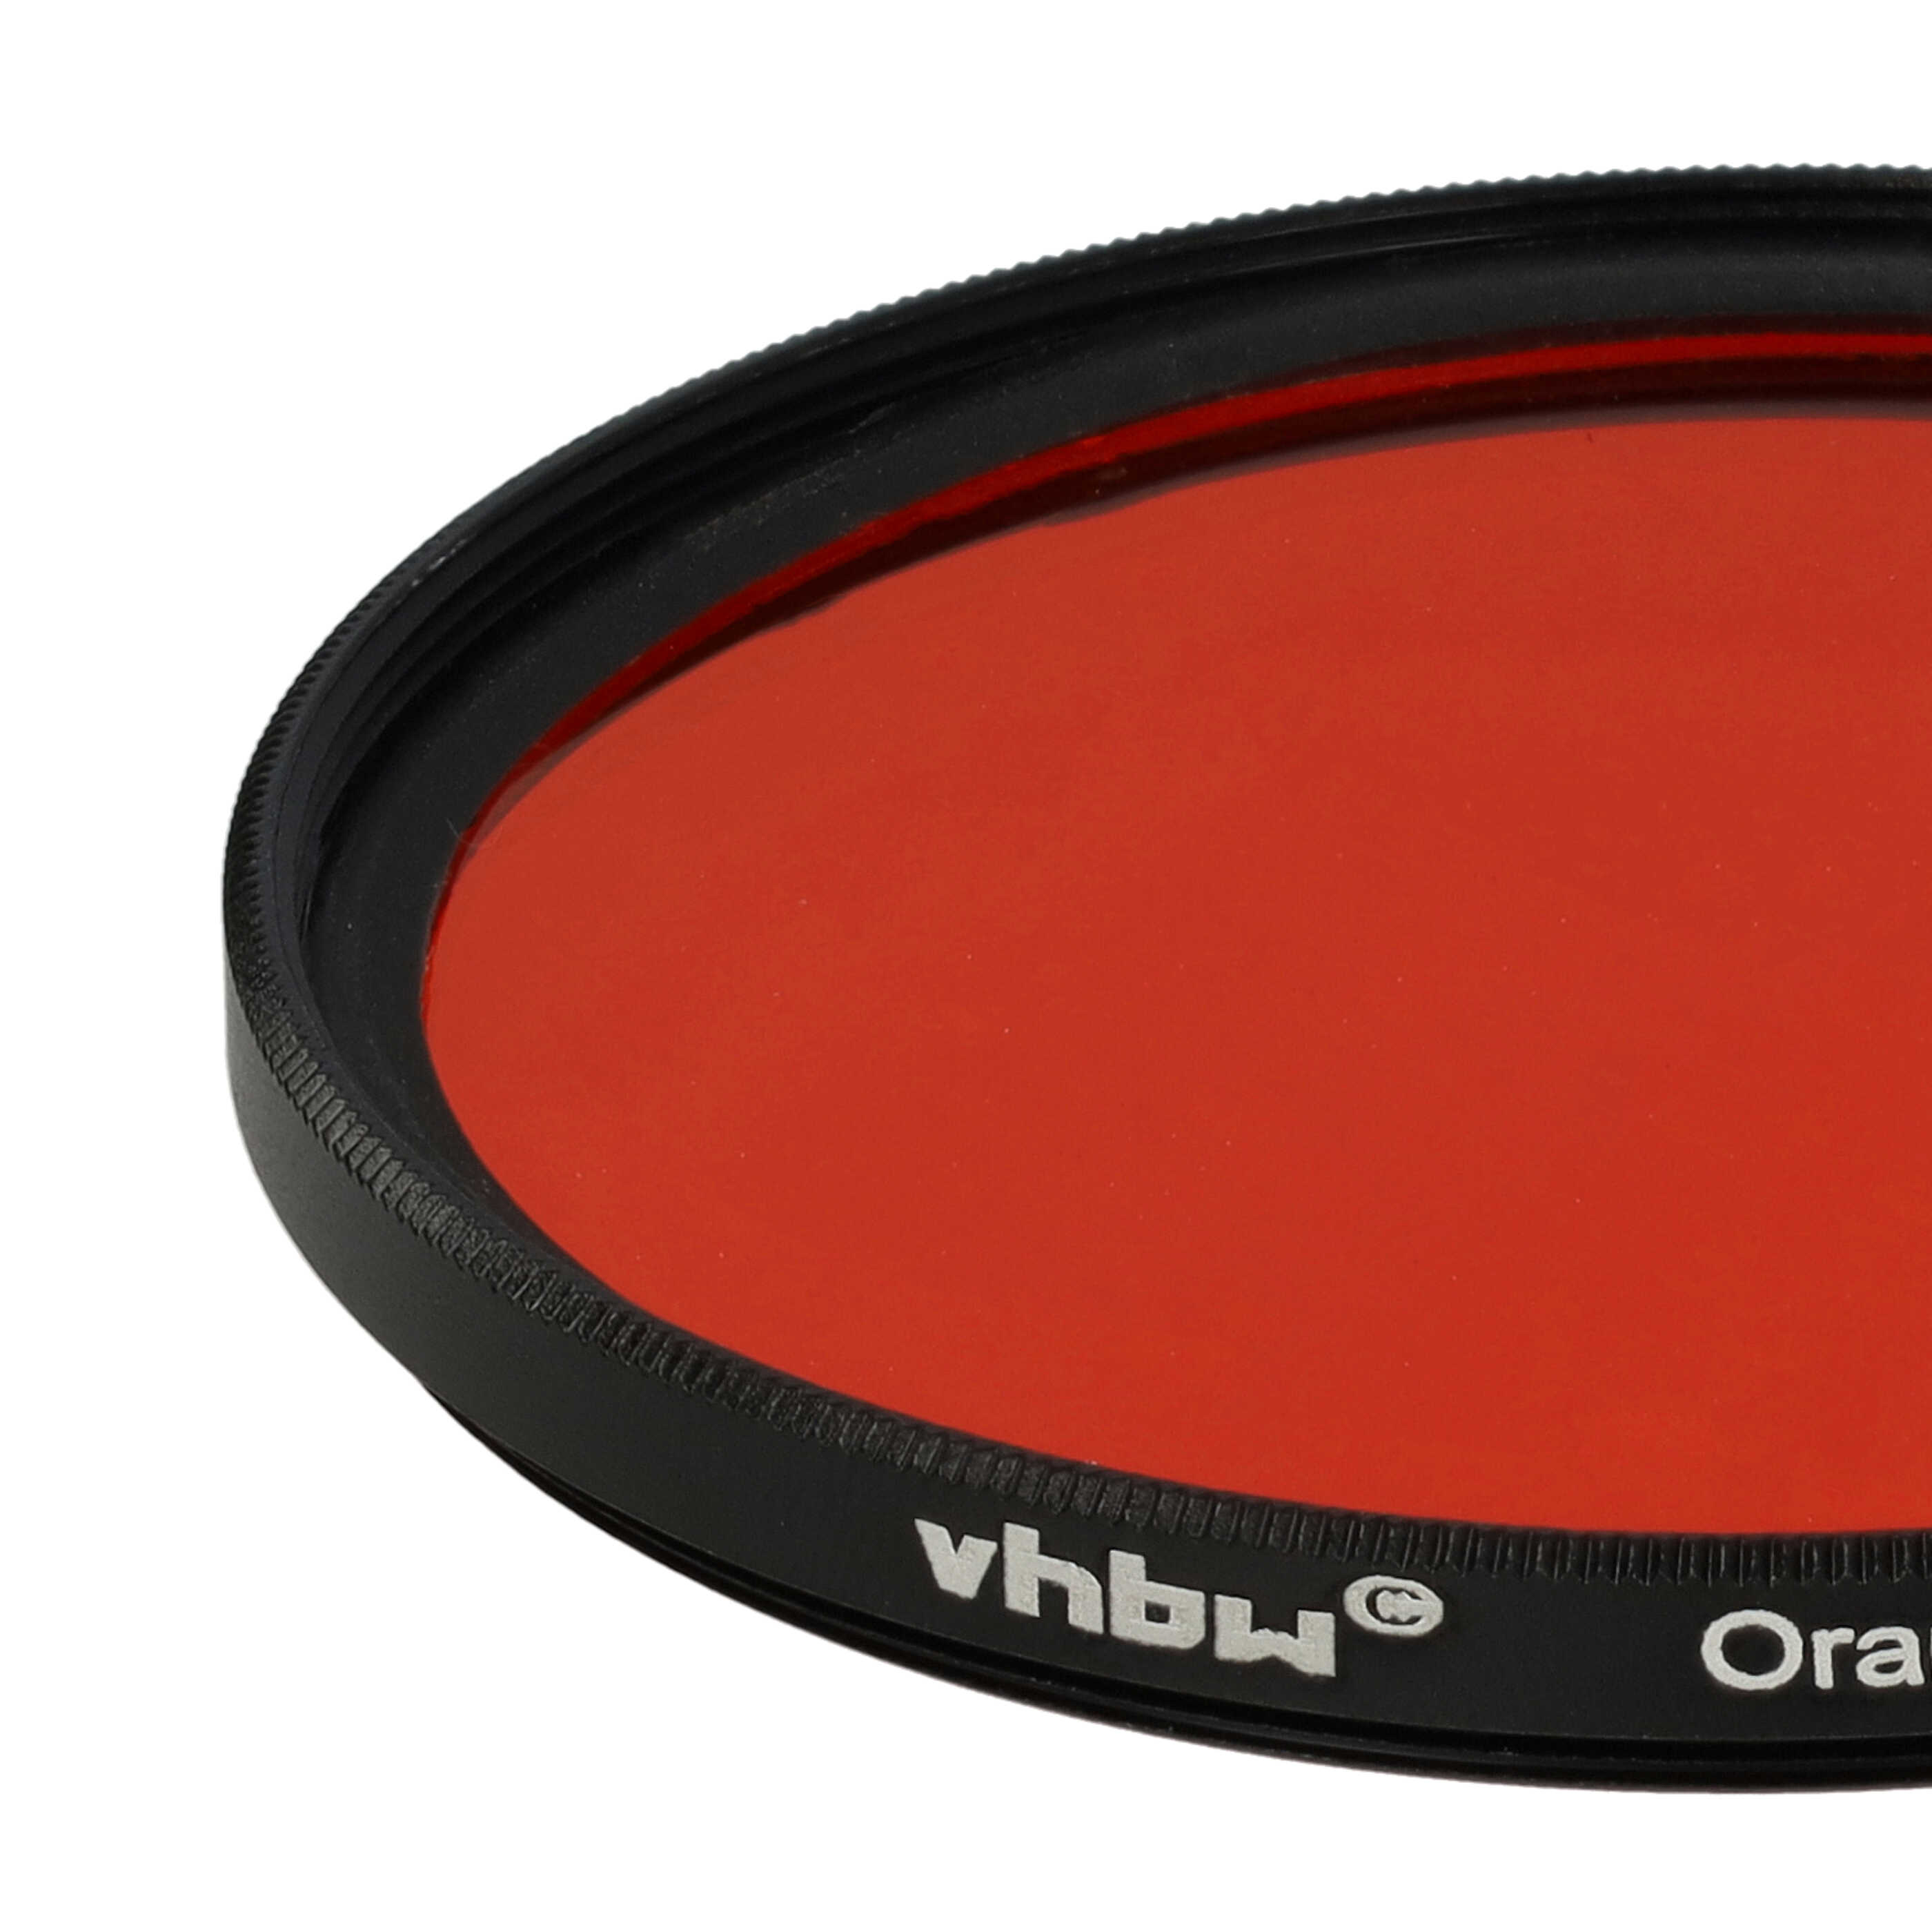 Filtr fotograficzny na obiektywy z gwintem 62 mm - filtr pomarańczowy